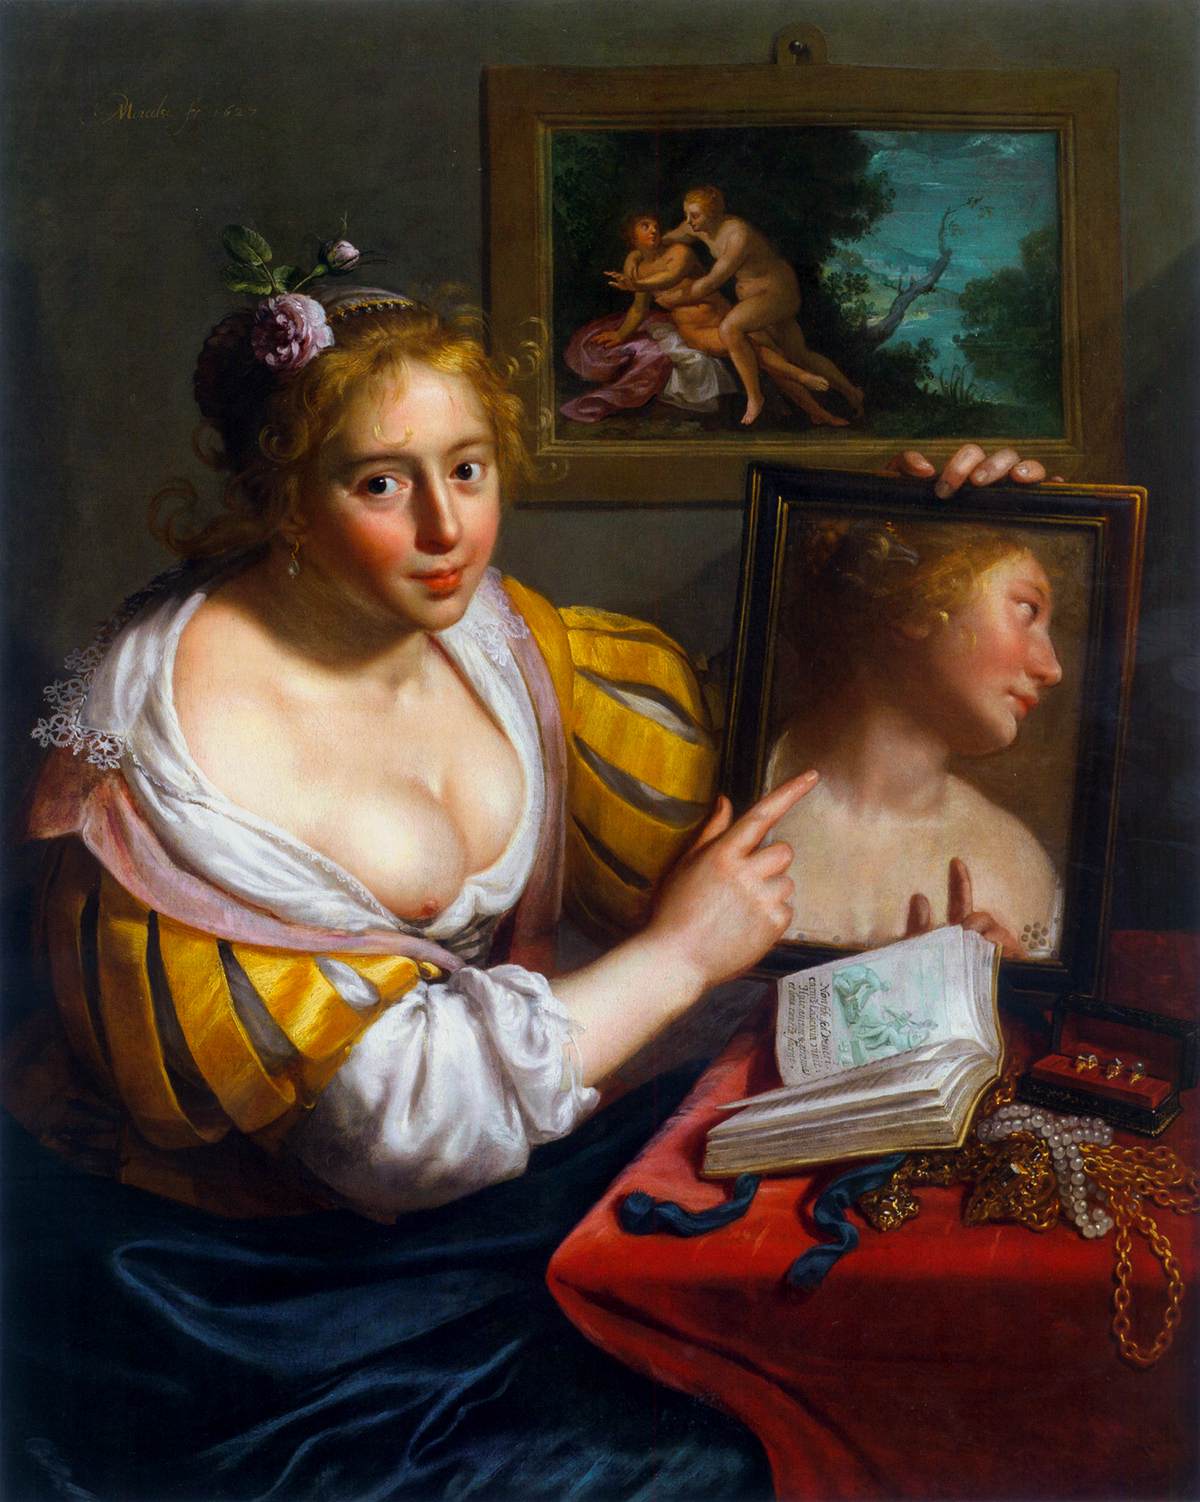 Dziewczyna z lustrem (alegoria profanowej miłości)